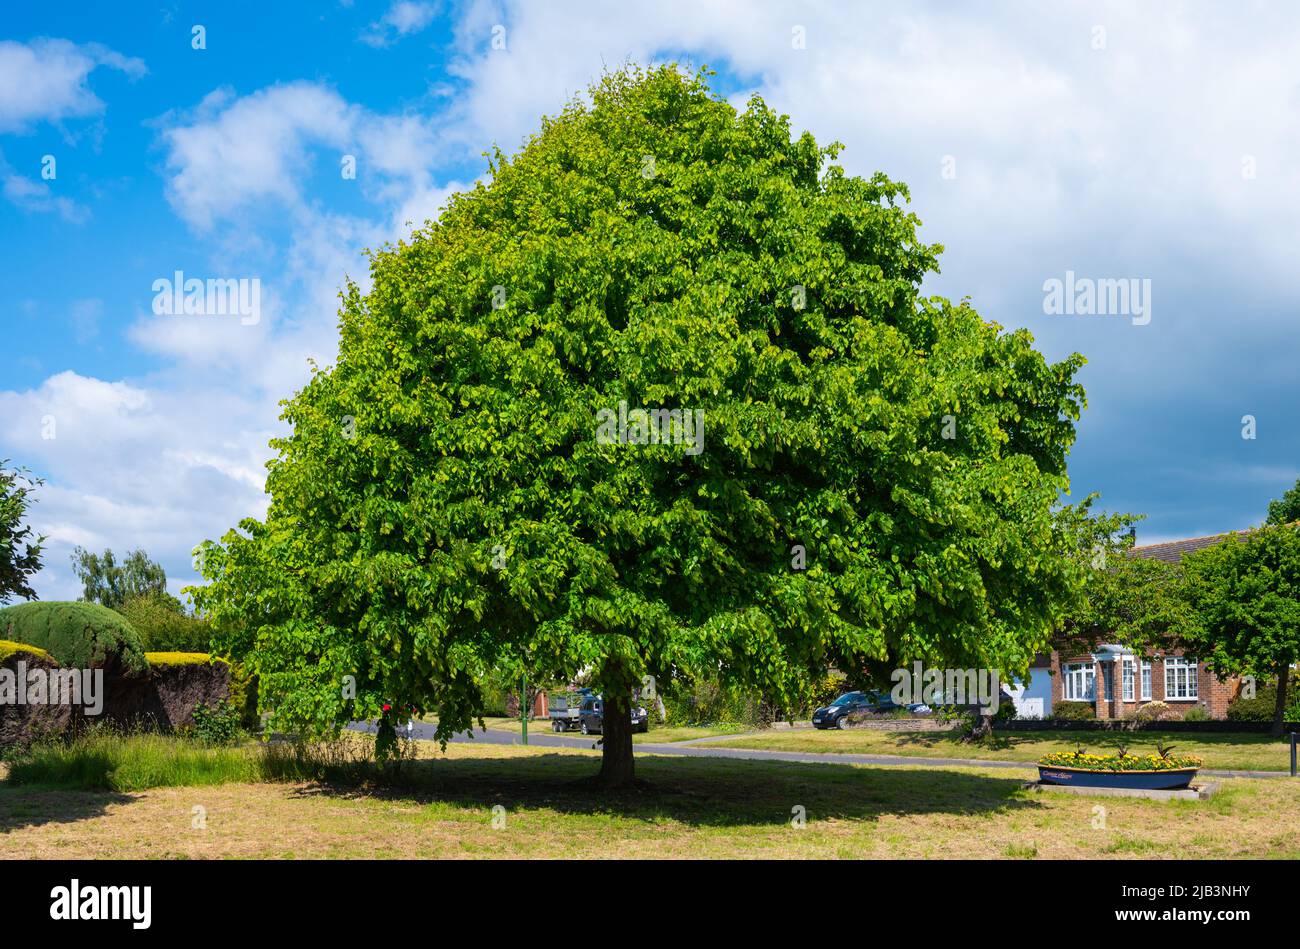 Grand arbre à chaux commune (Tilia x europaea) qui pousse sur une bordure d'herbe à la fin du printemps dans une zone résidentielle de West Sussex, Angleterre, Royaume-Uni. Banque D'Images